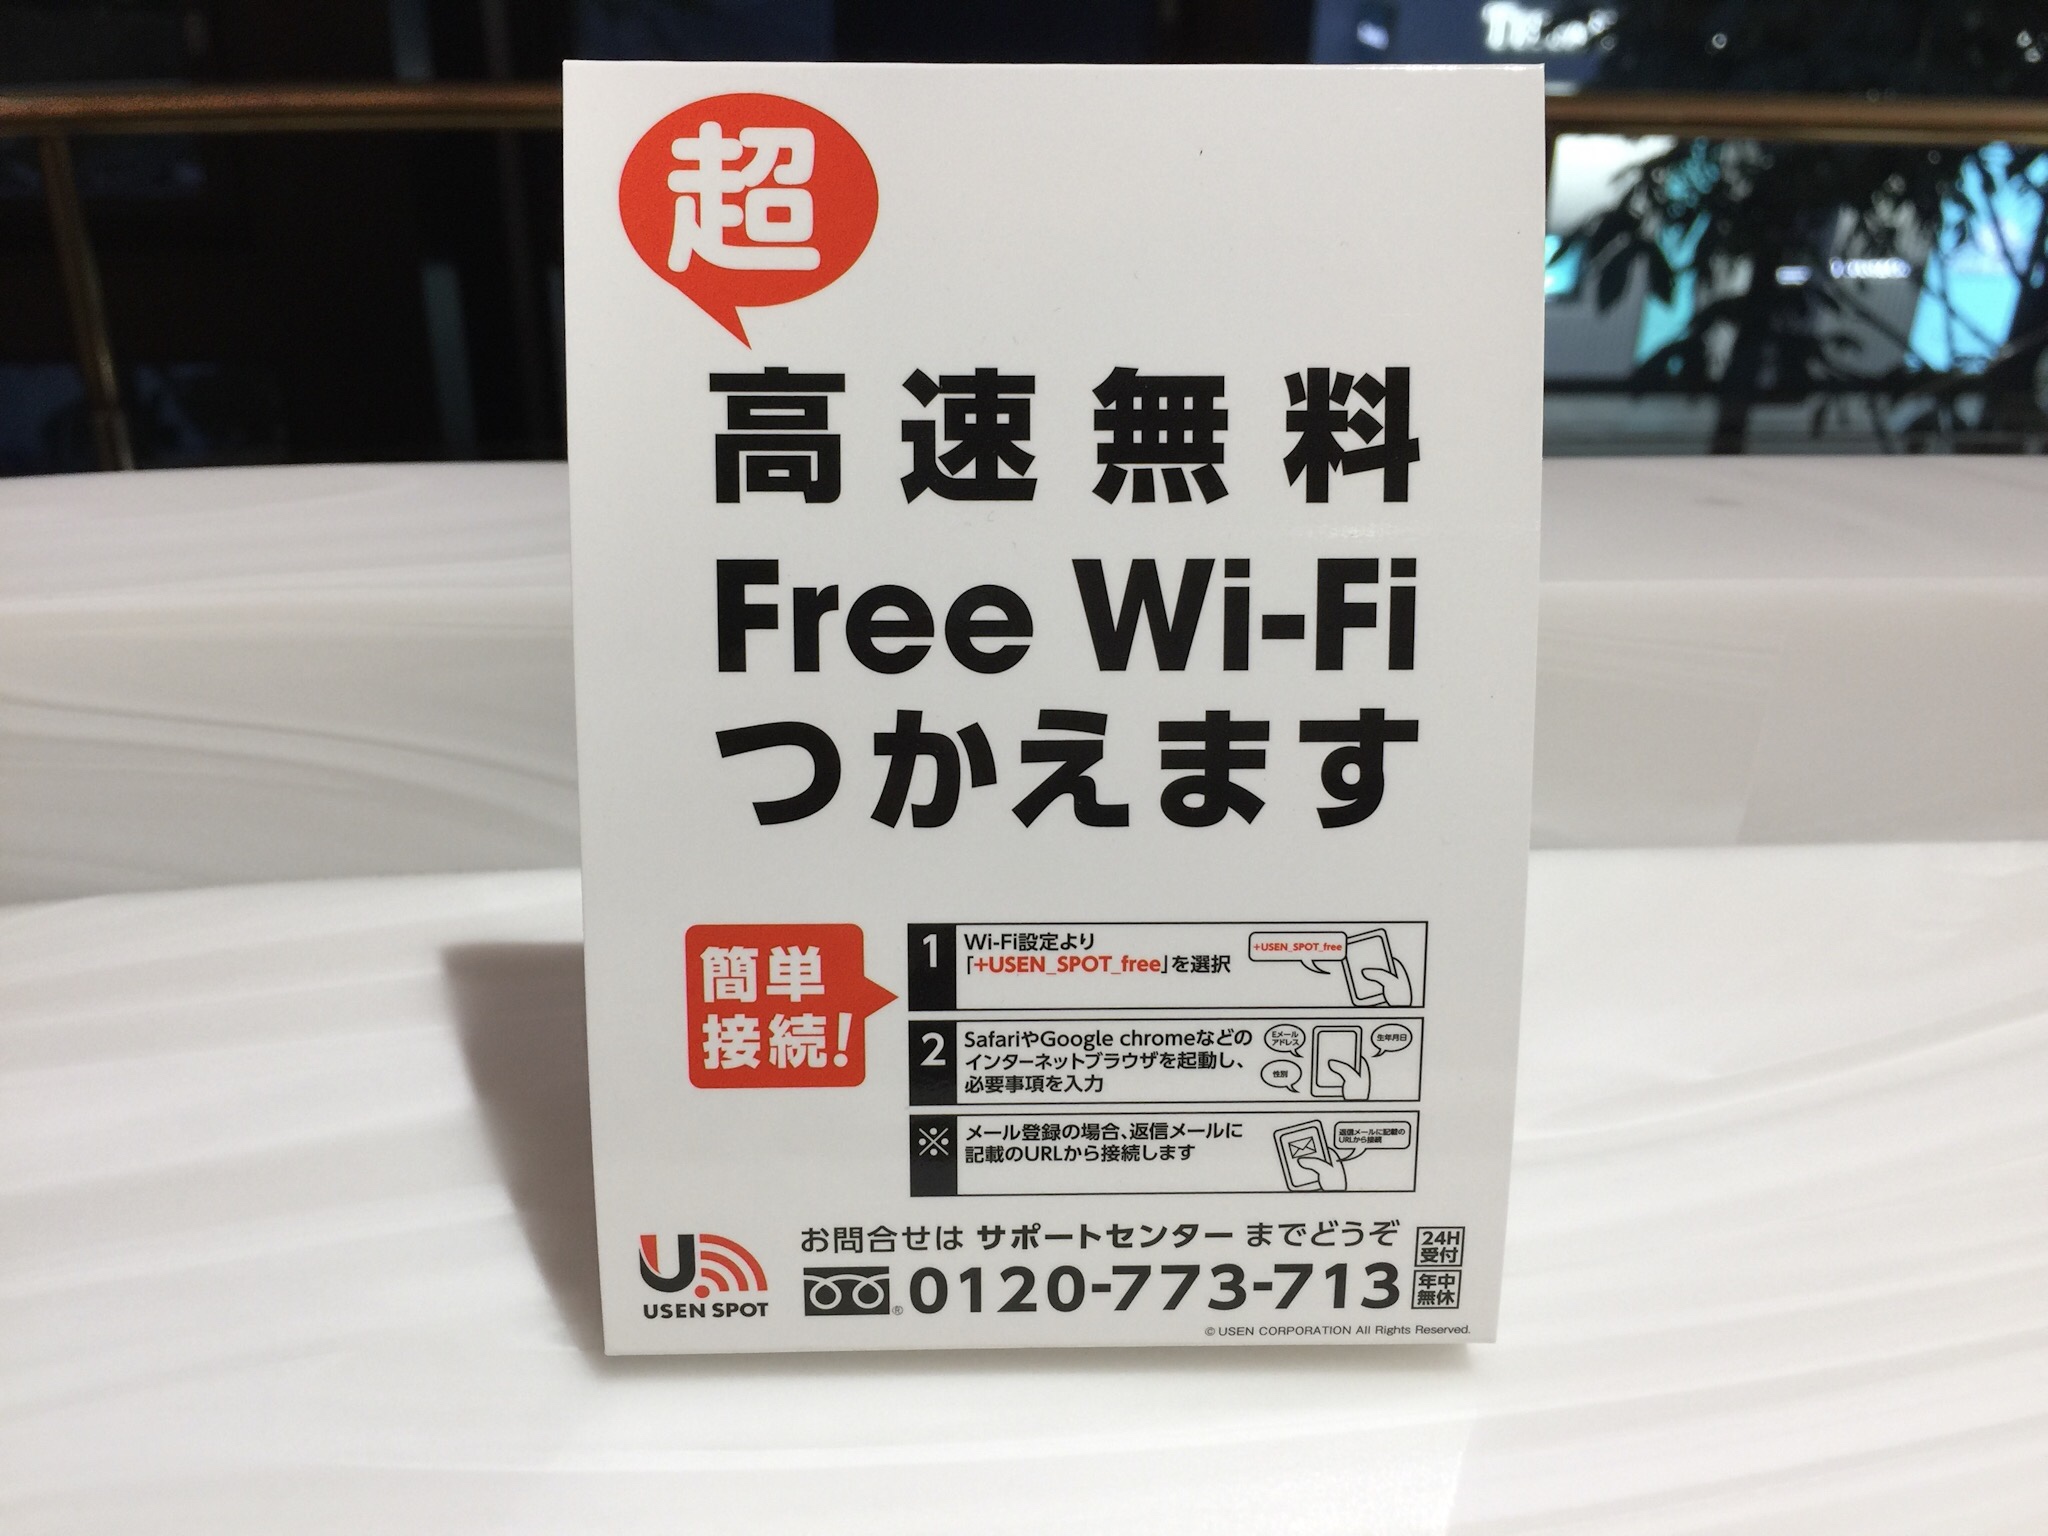 Free Wi-Fi。